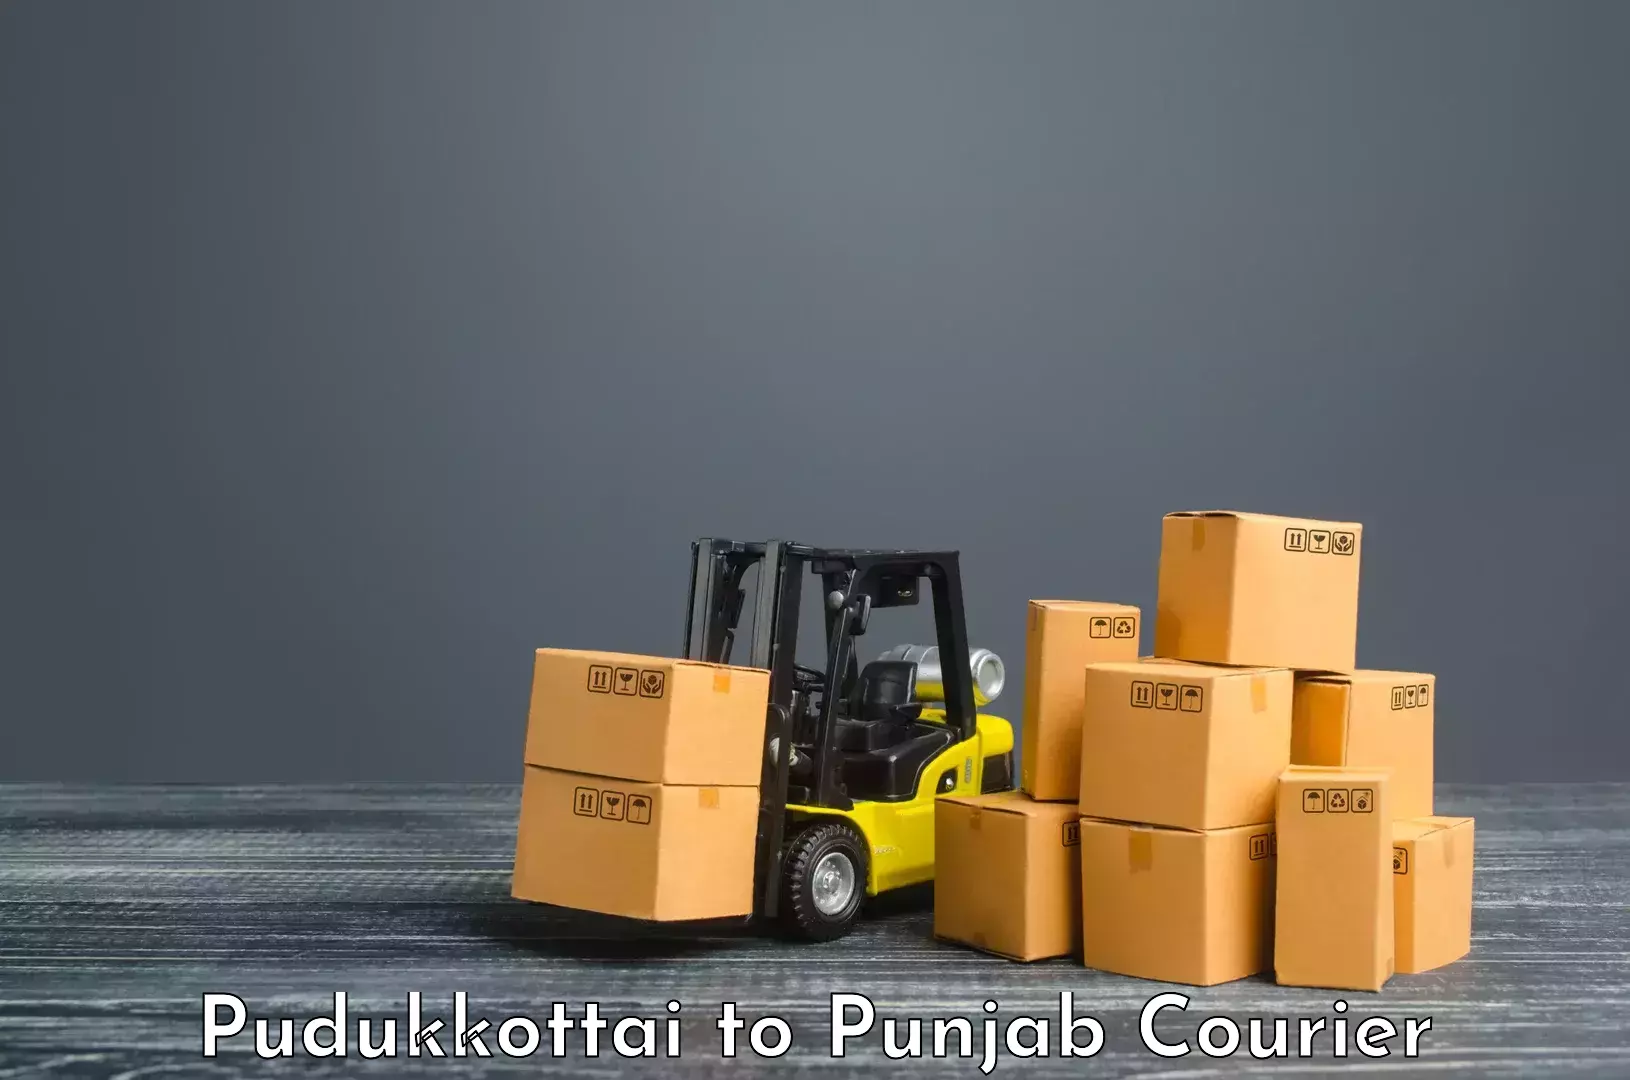 Nationwide shipping capabilities Pudukkottai to Punjab